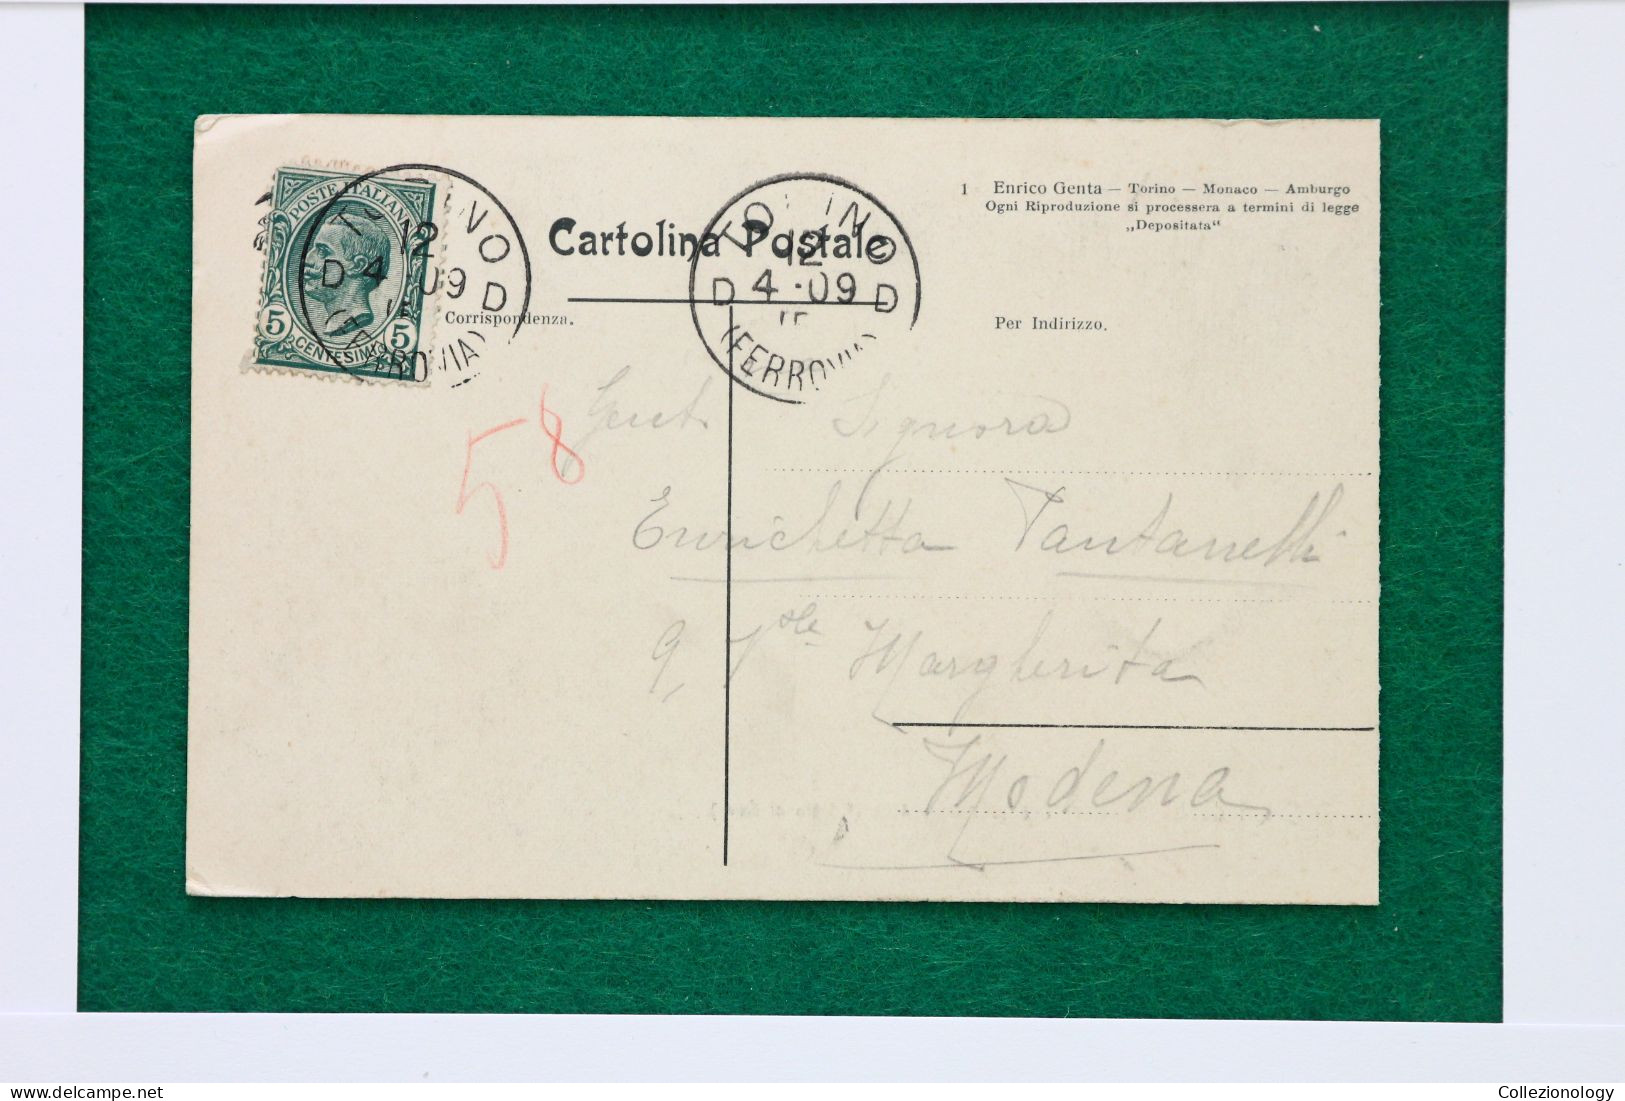 CARTOLINA POSTALE VIAGGIATA 1909 LANZO TORINESE (TORINO), PIEMONTE, ITALIA: EFFETTO DI NEVE 0022 POSTCARD - Multi-vues, Vues Panoramiques